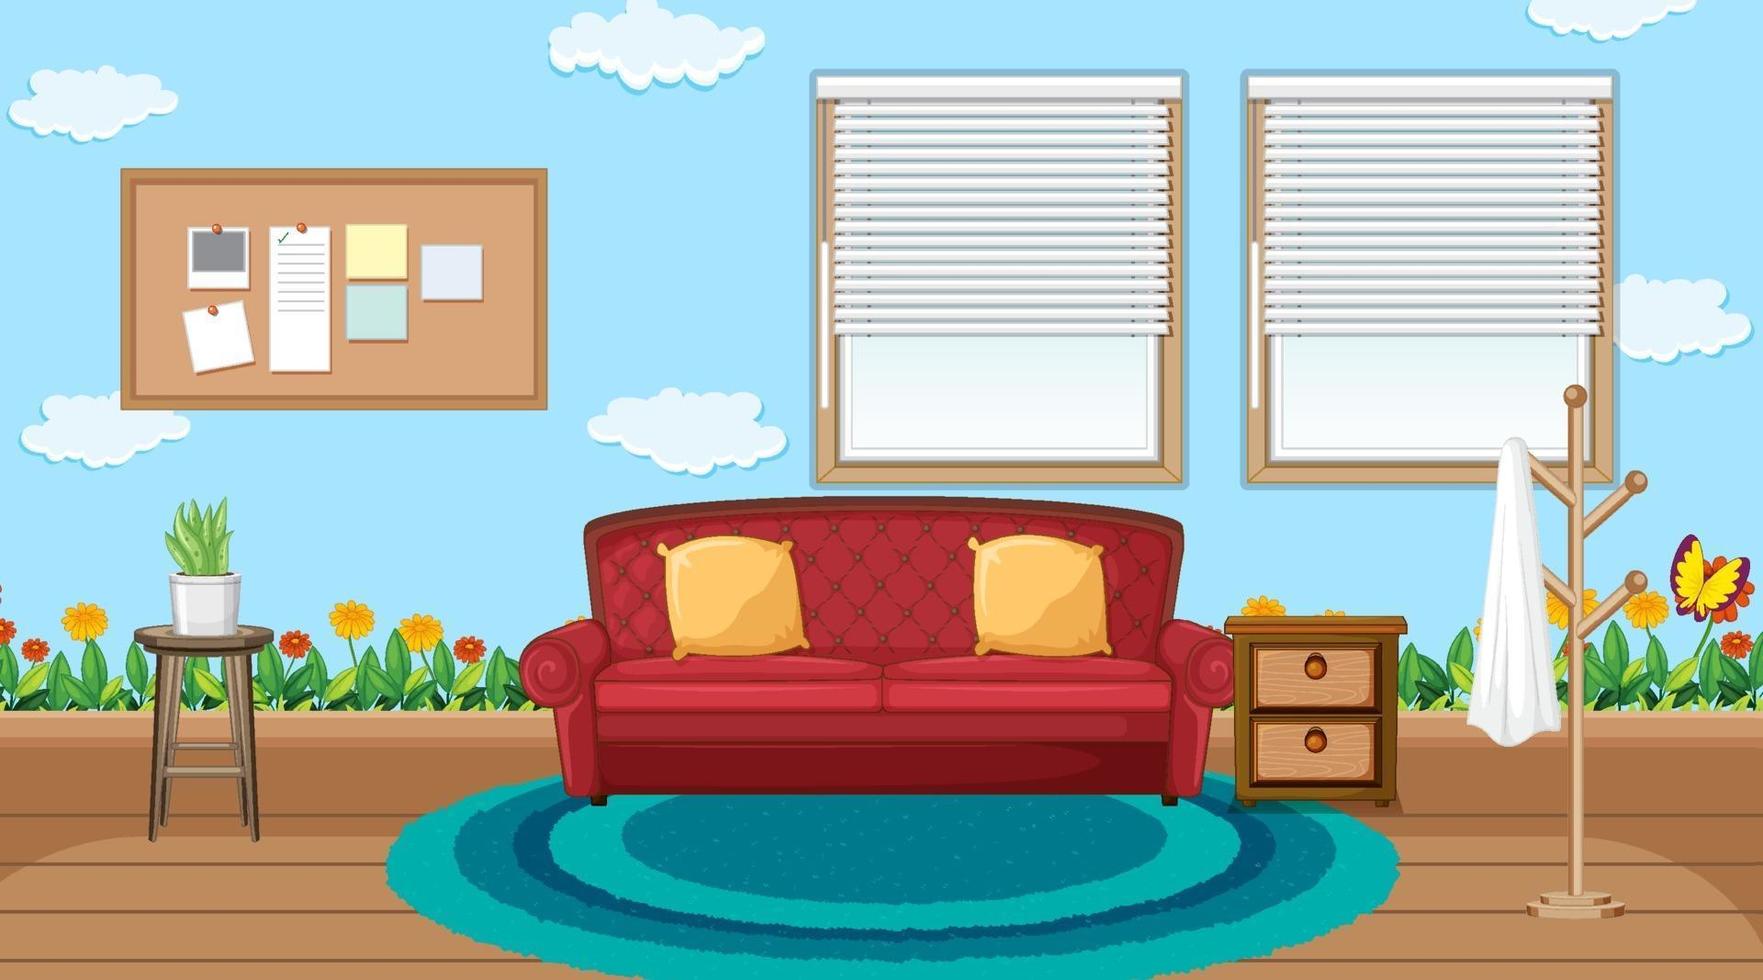 Diseño de interiores de sala de estar con muebles. vector